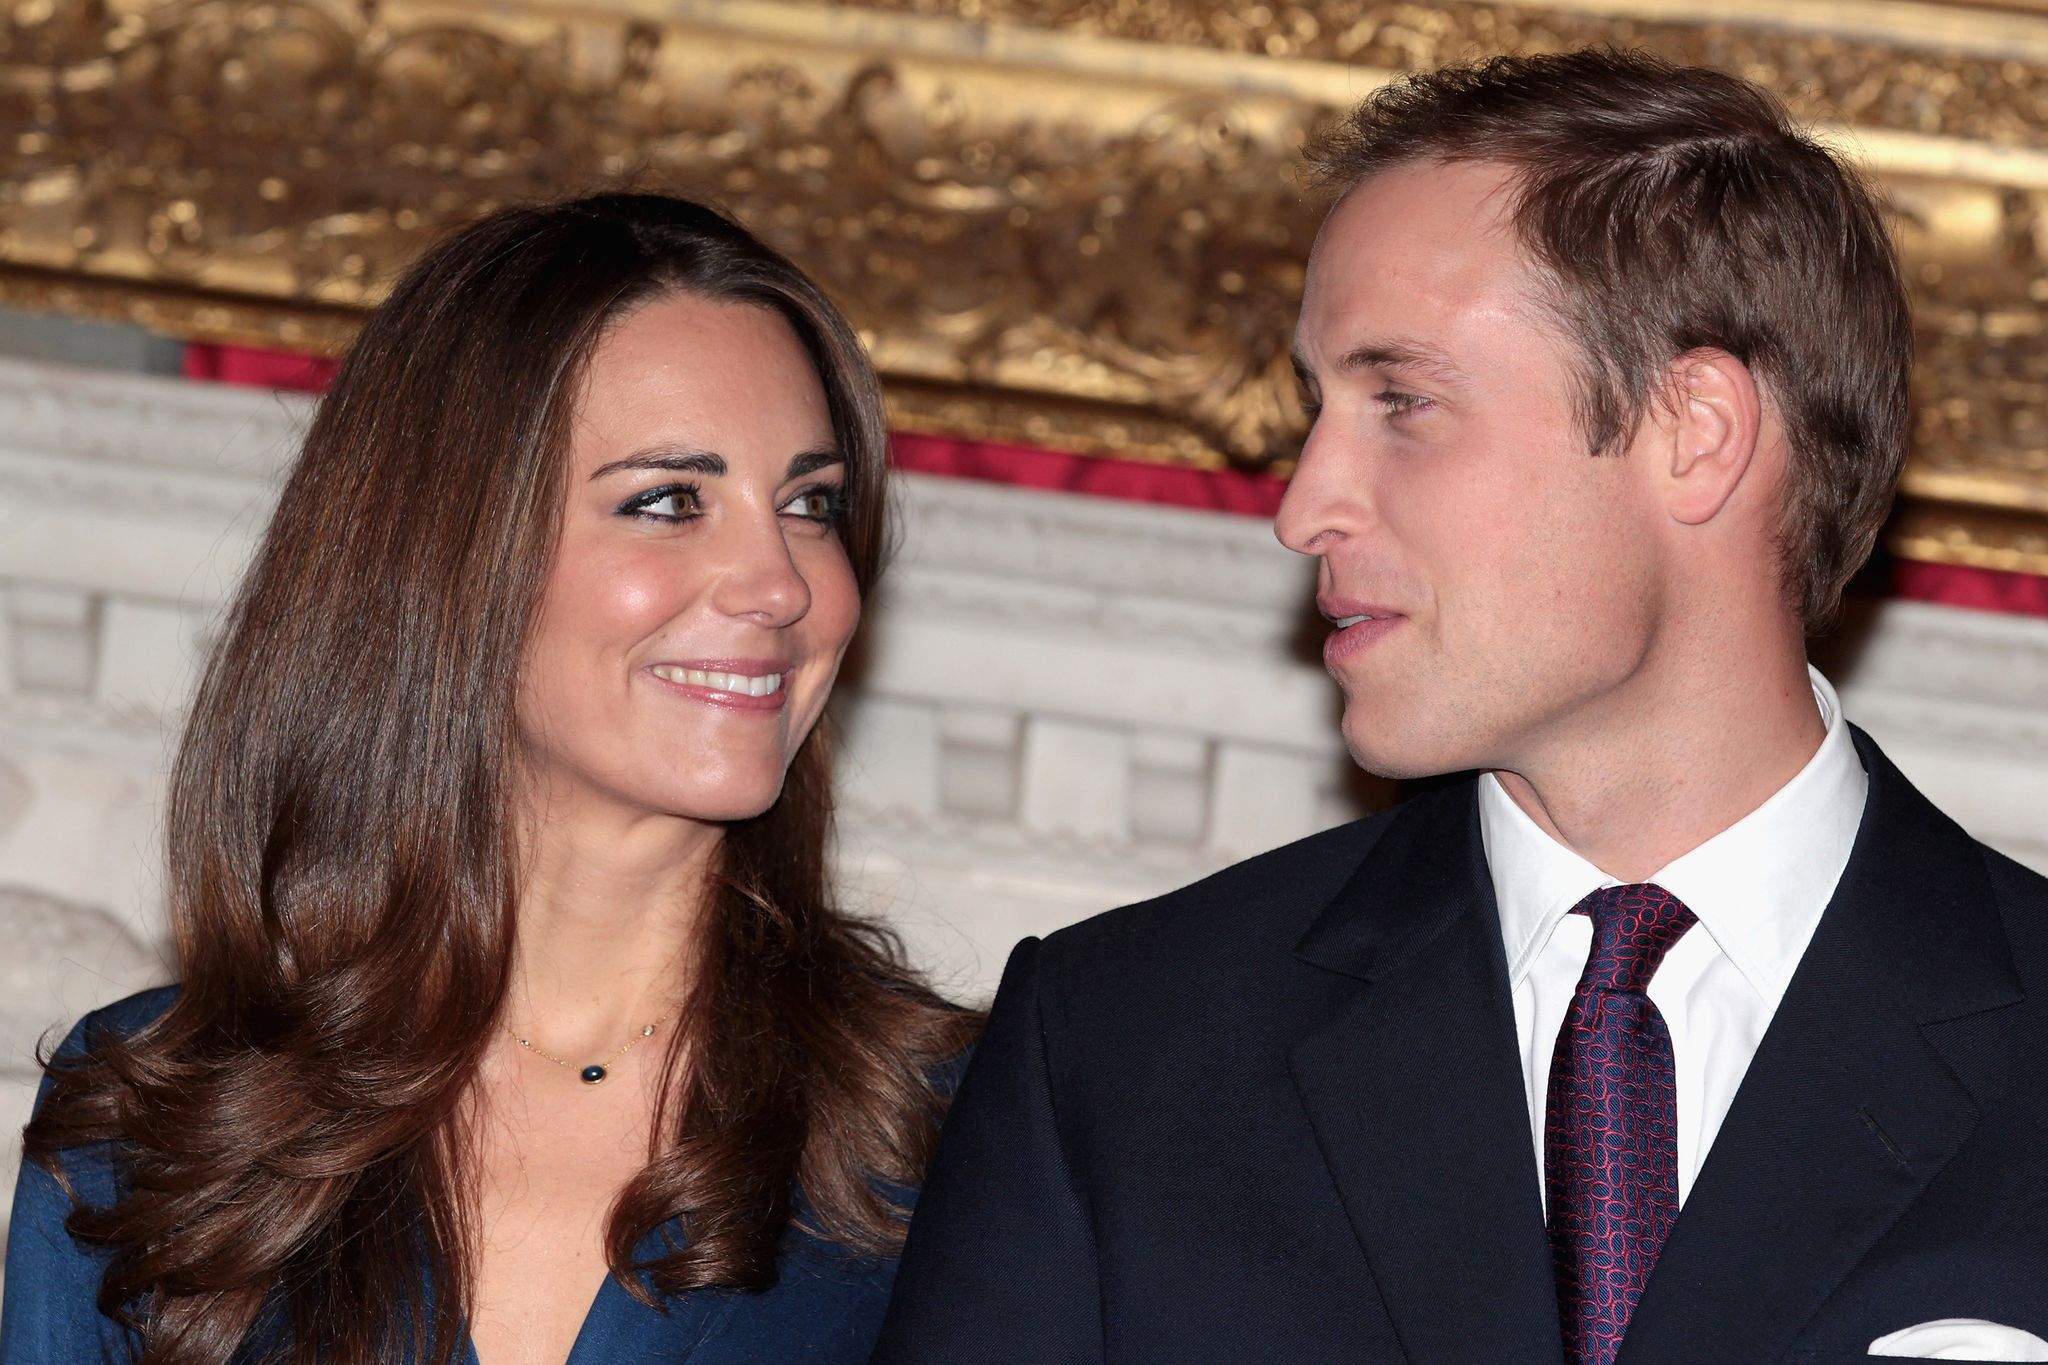 Duke and Duchess Cambridge engagement